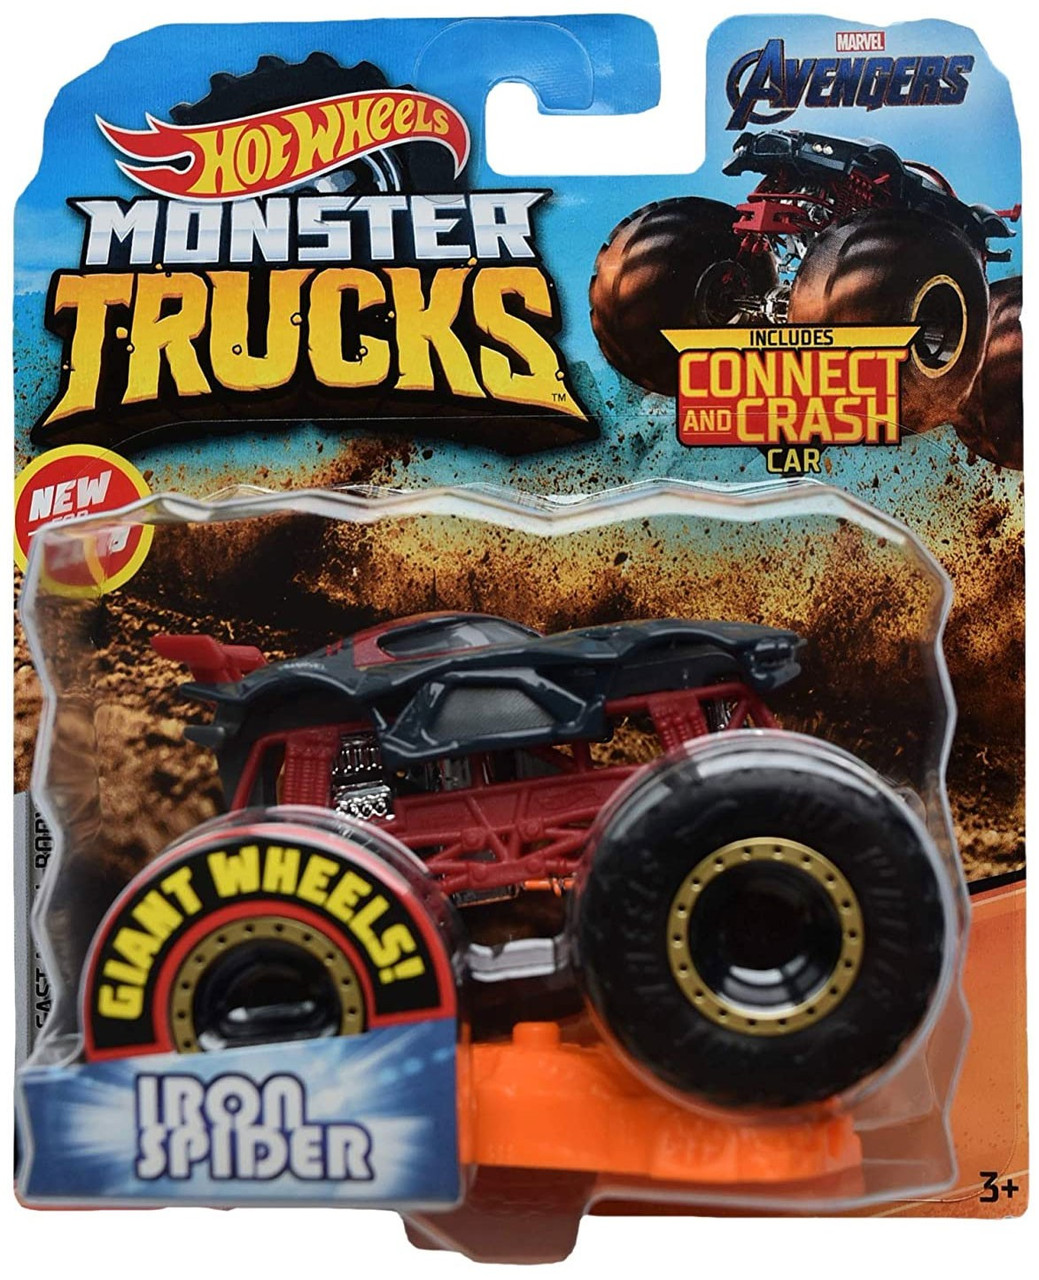 monster jam avenger toy